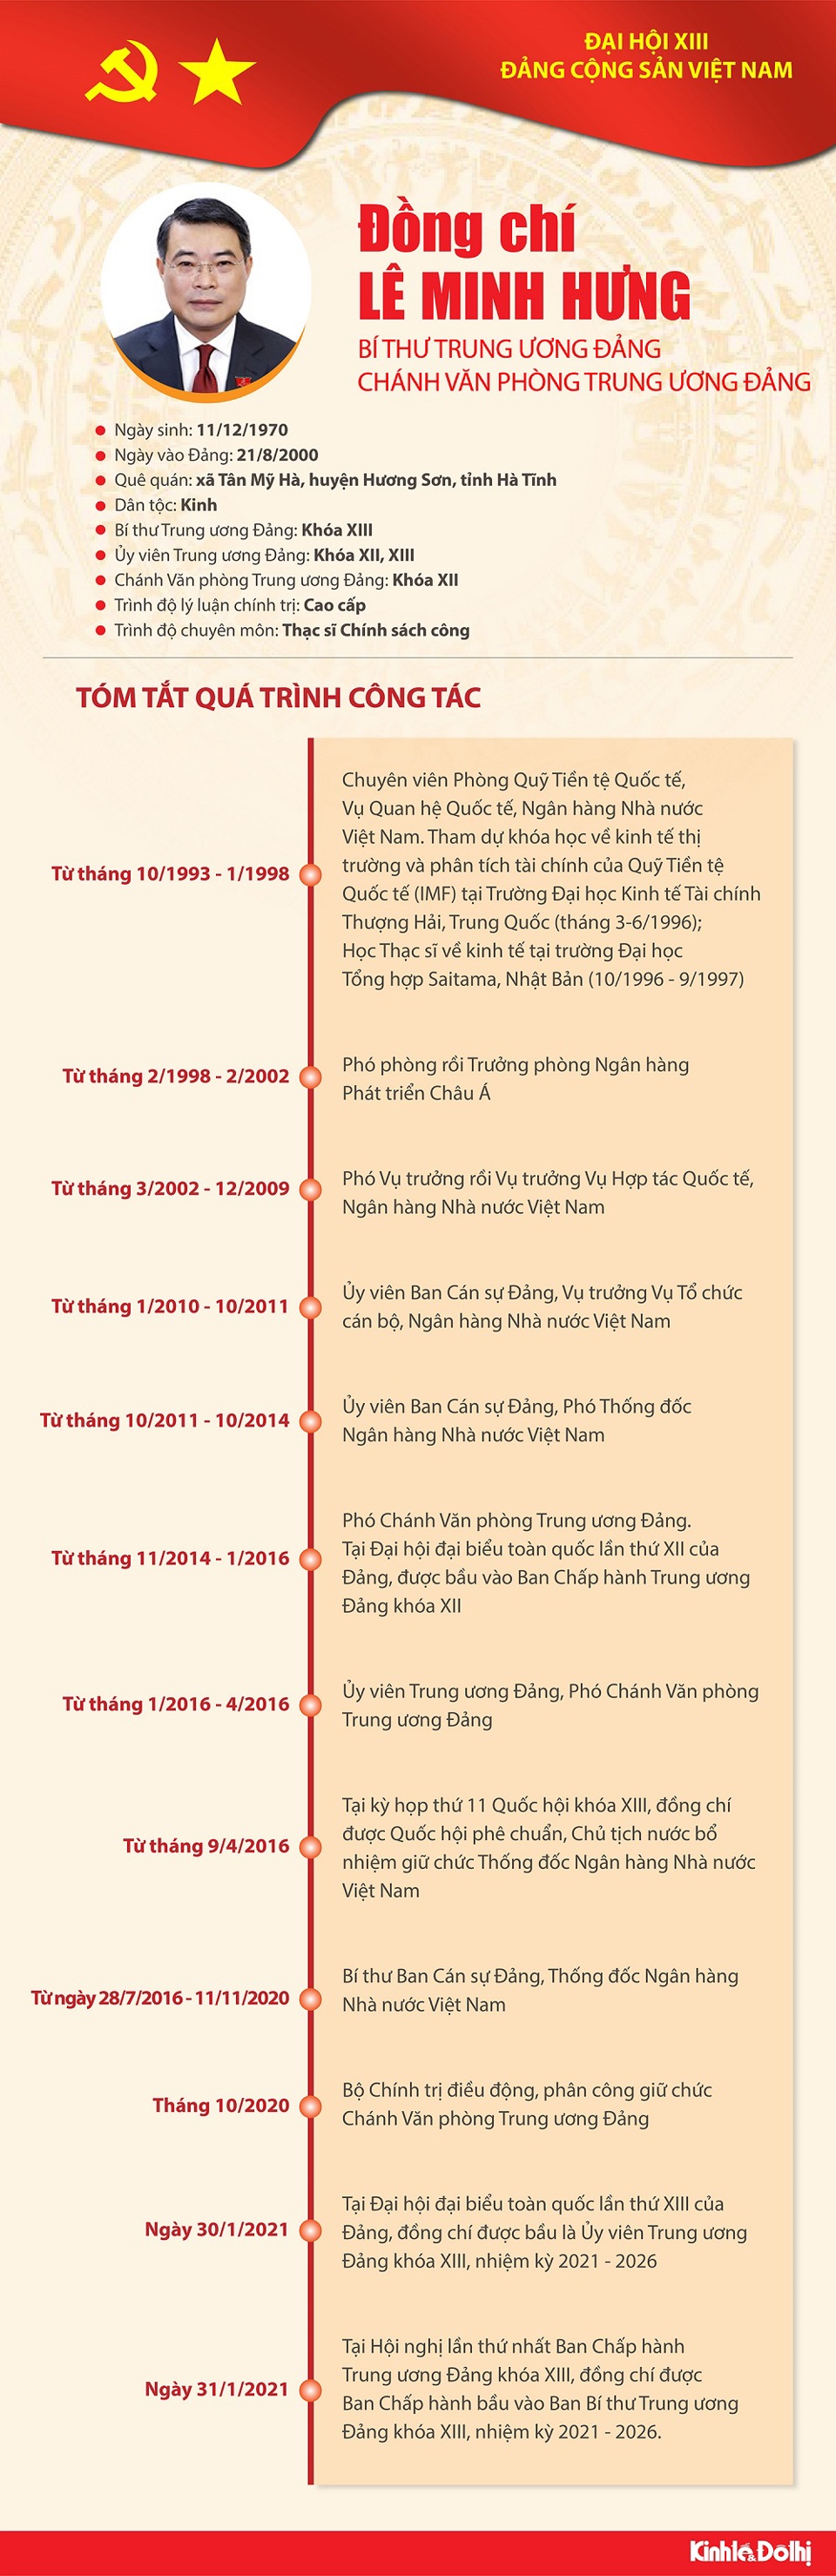 [Infographic] Quá trình công tác Bí thư Trung ương Đảng Lê Minh Hưng - Ảnh 1